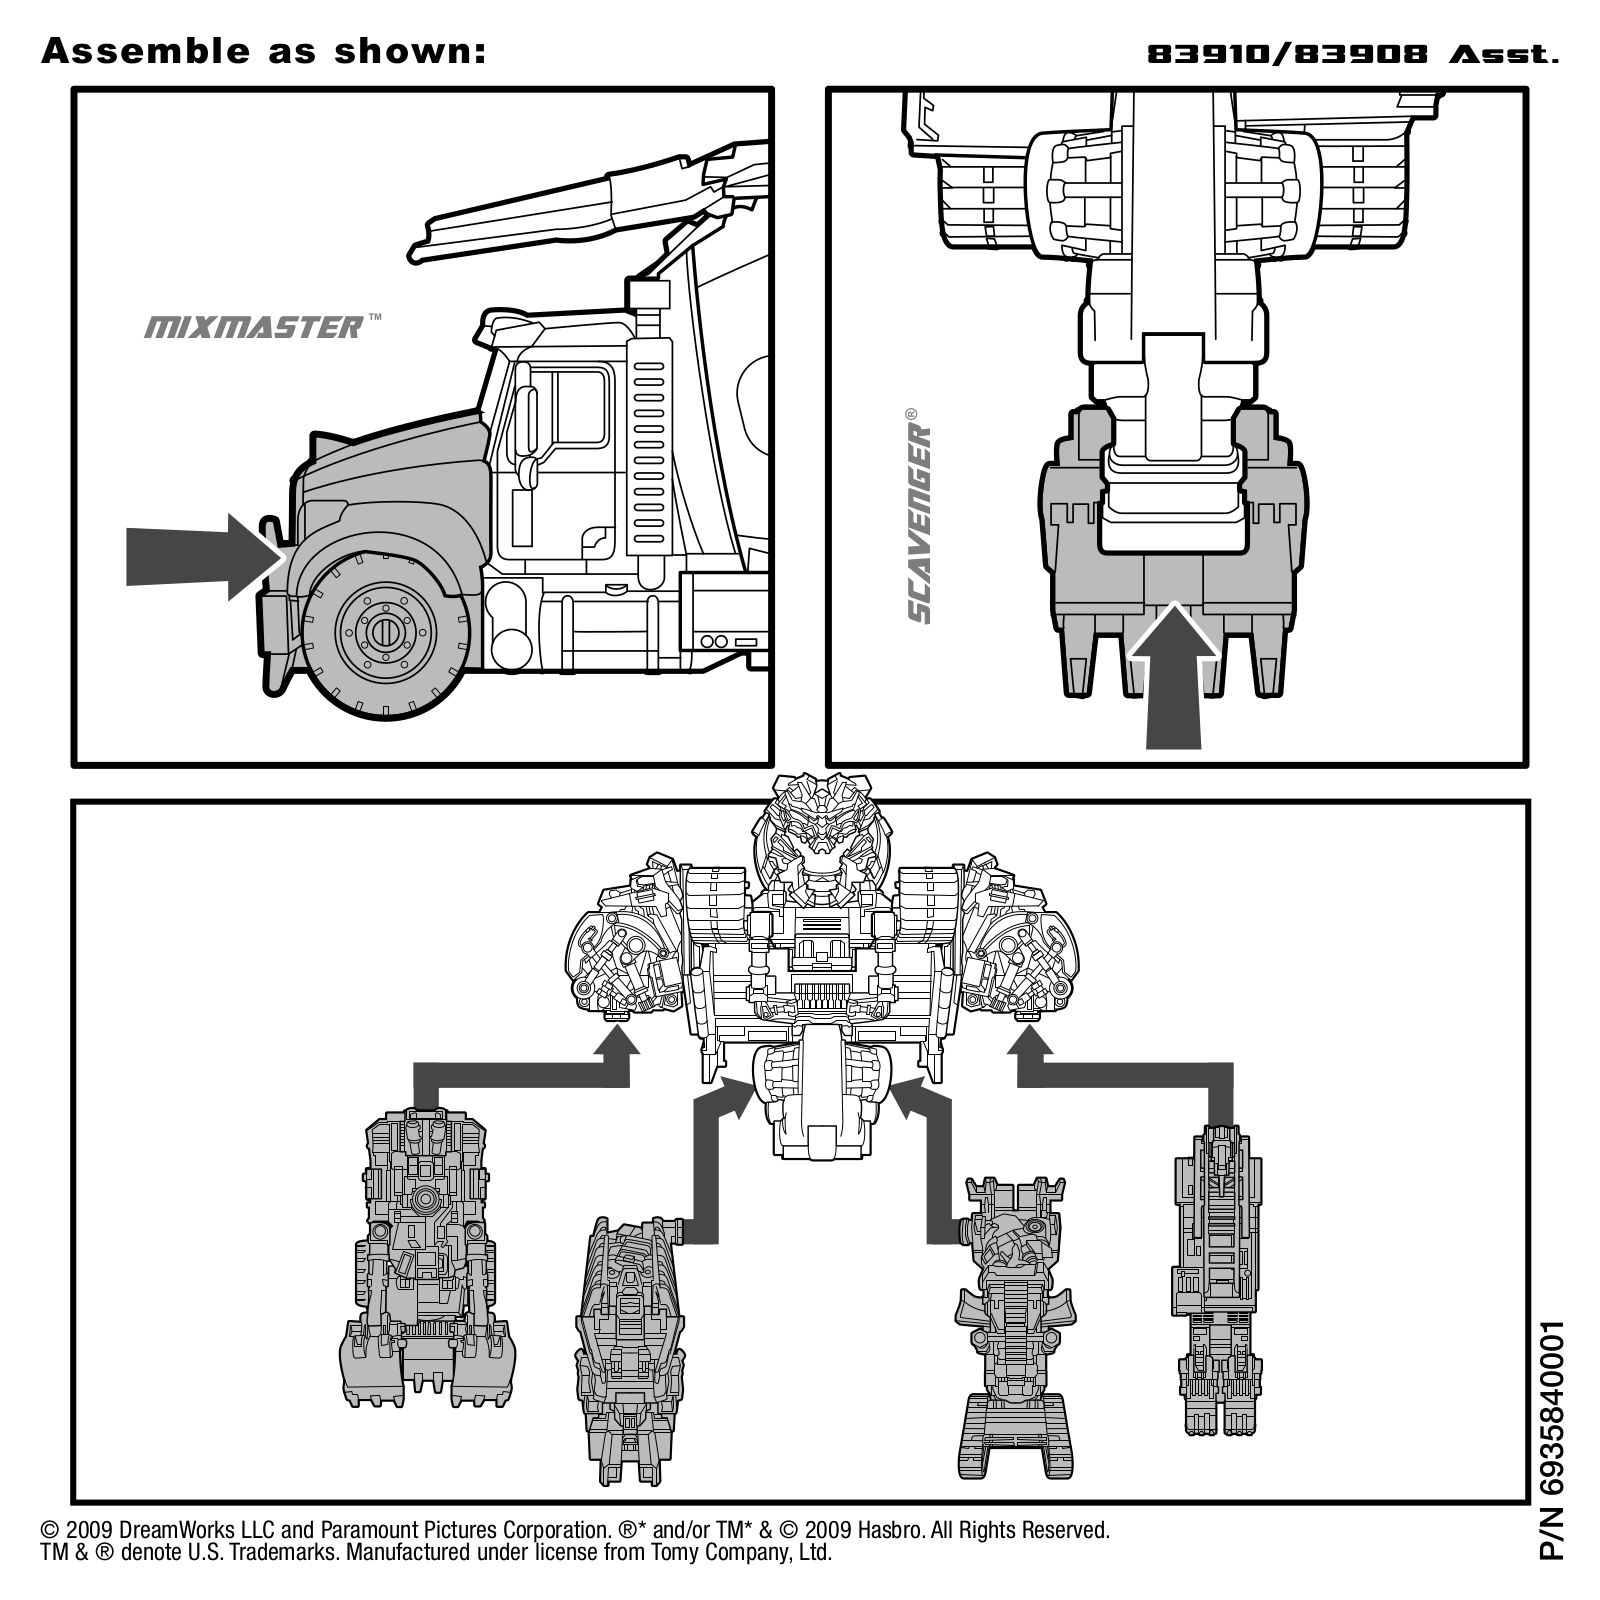 Hasbro TRANSFORMERS CONSTRUCTION DEVASTATOR ASSEMBLY Manual